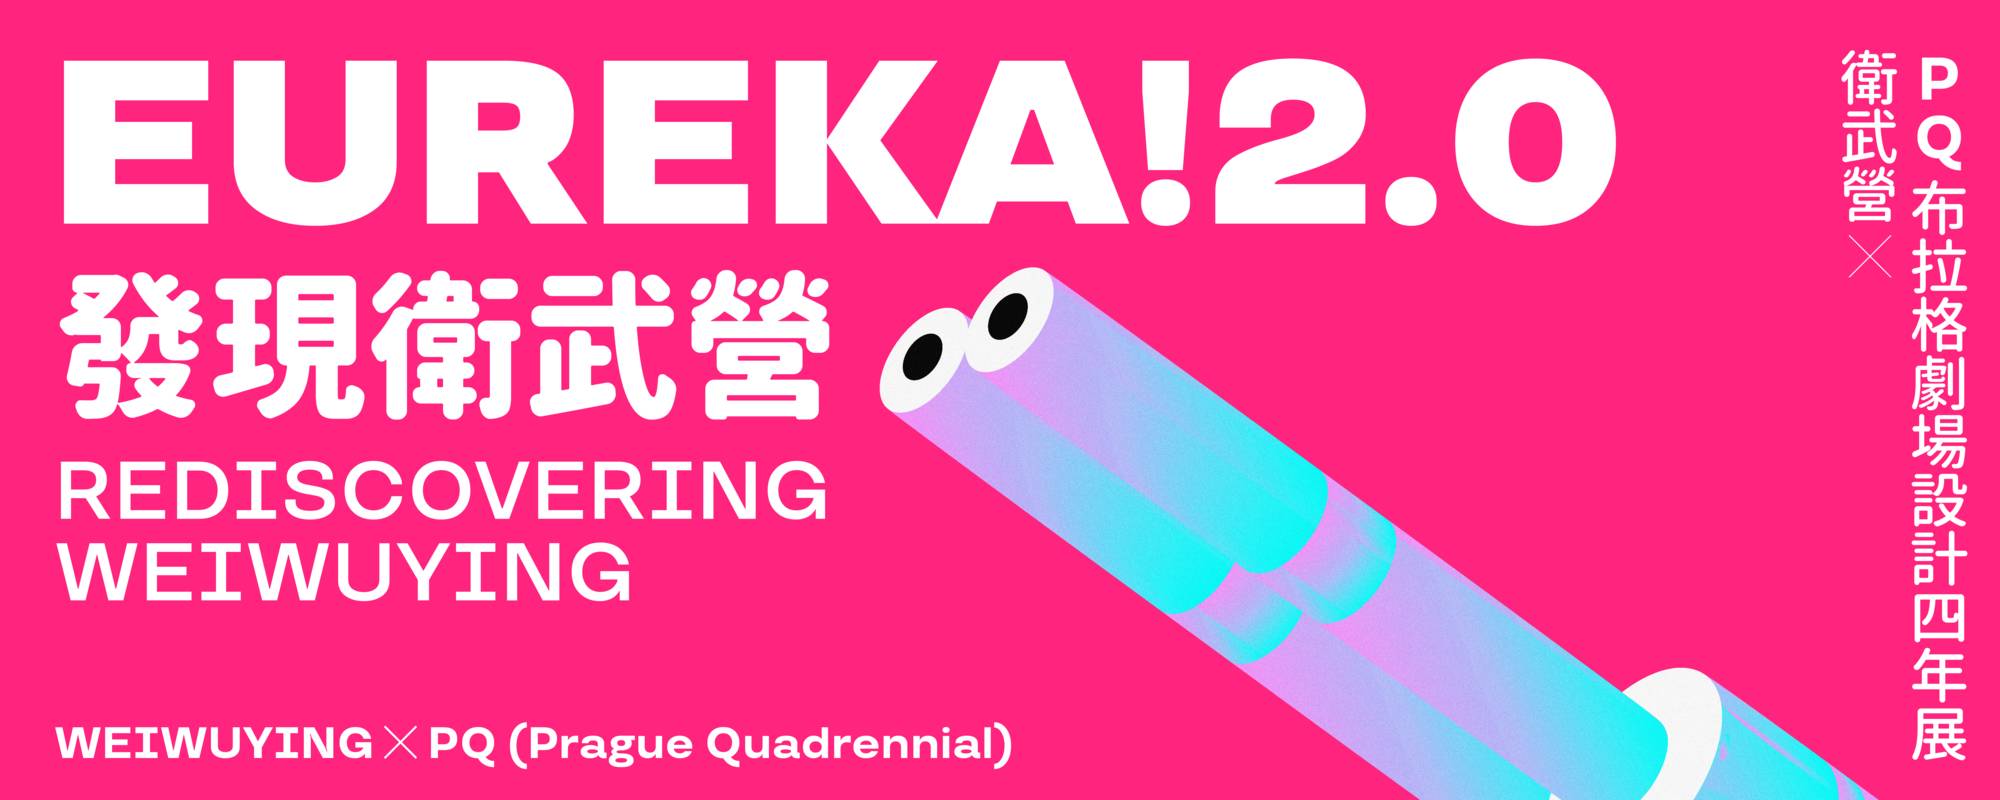 EUREKA!2.0 banner 